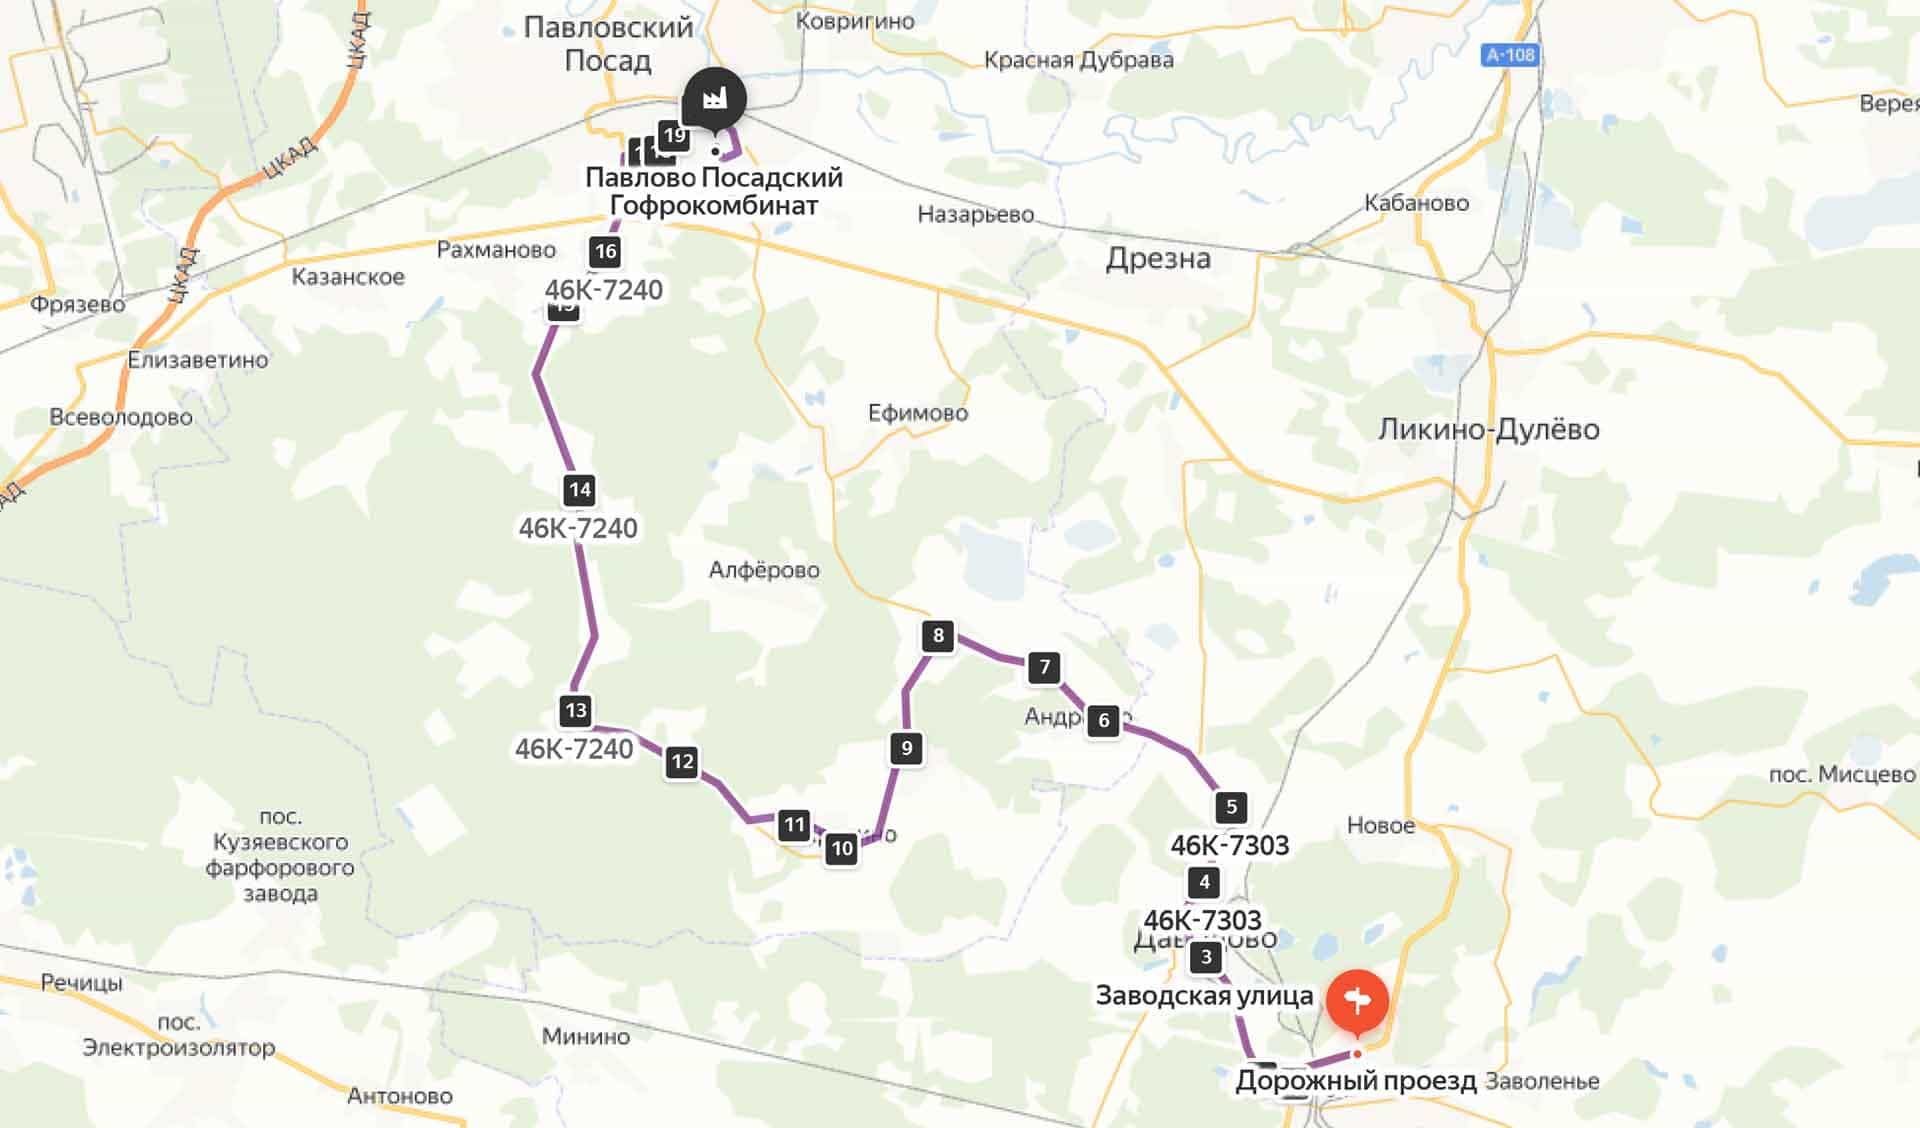 Схема проезда на Павлово-Посадский гофрокомбинат из Купрвского